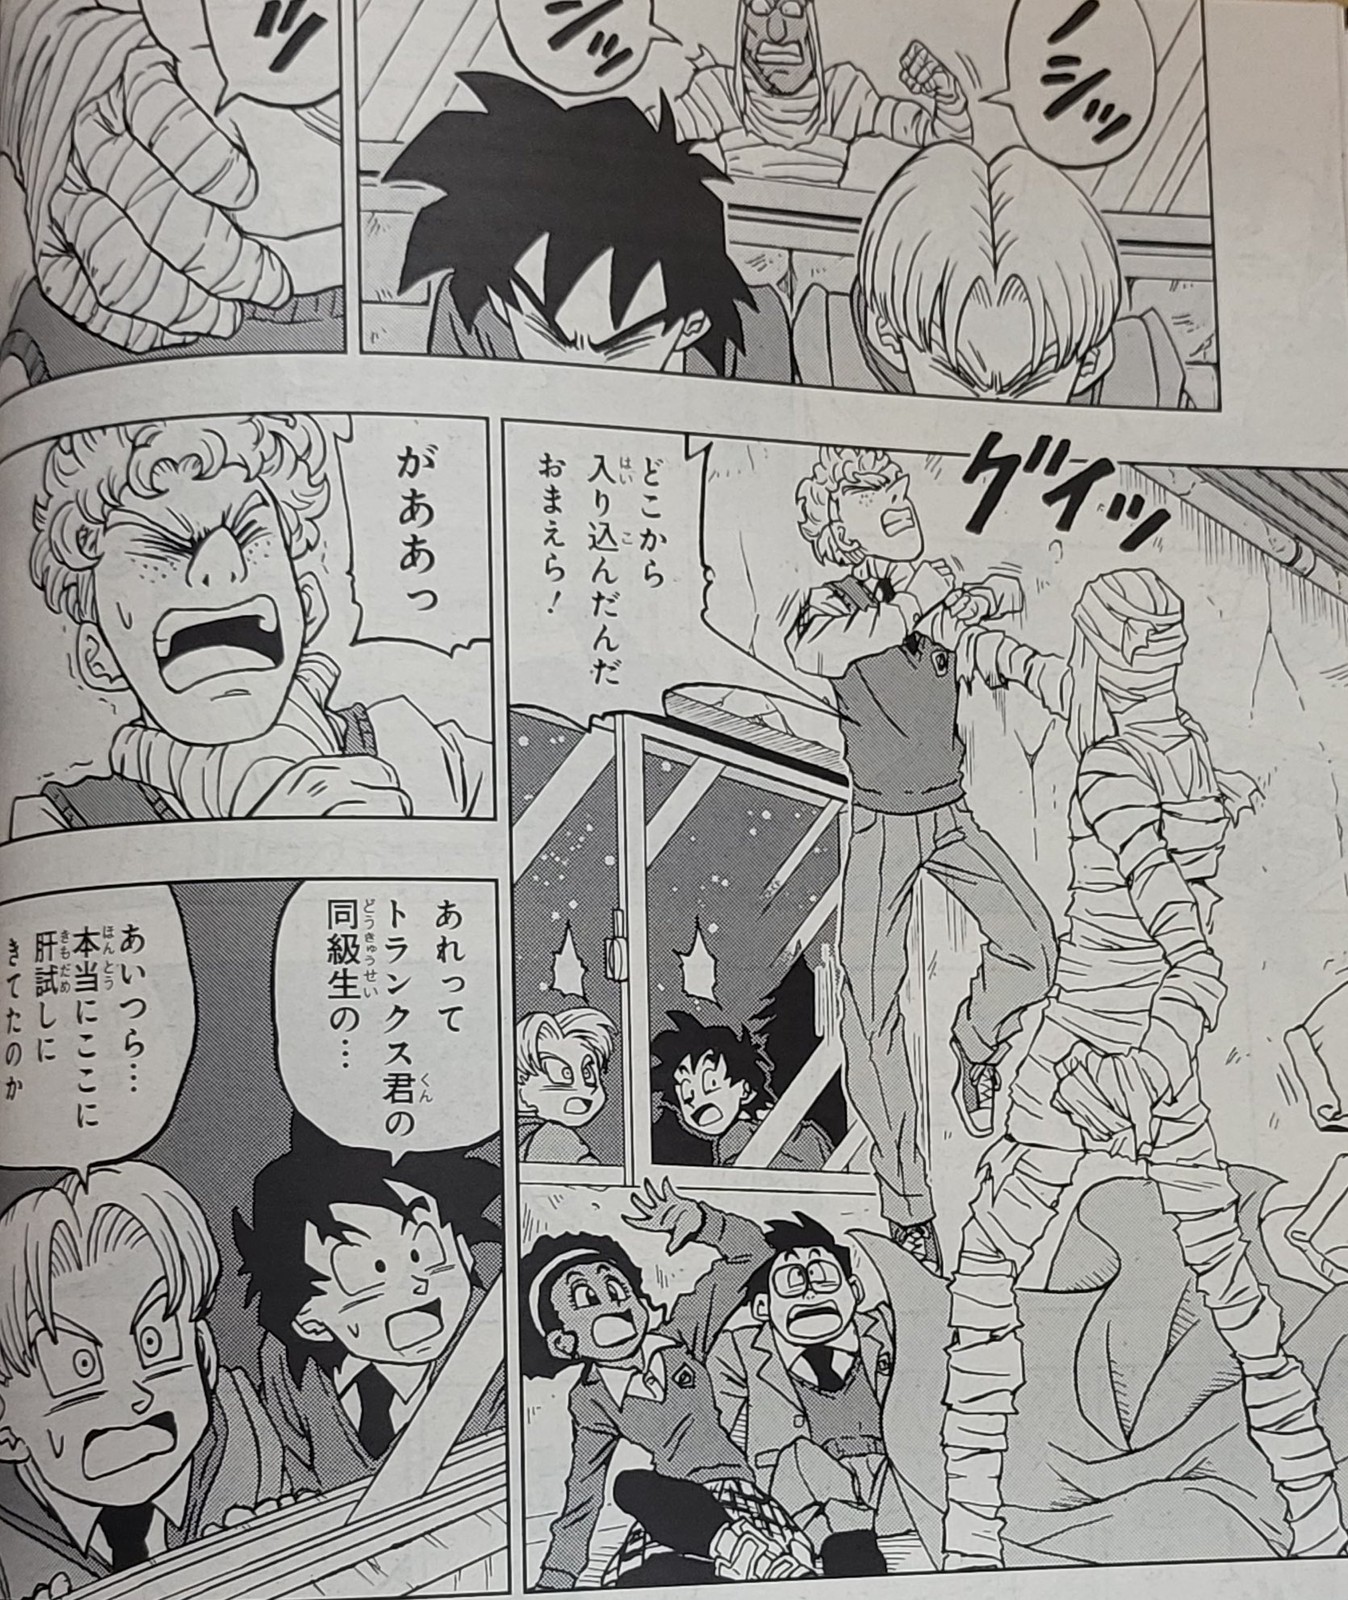 Kami Sama Explorer - Dragon B - #Brandão Gowasu conversa com Shin a  respeito dos brincos Potara. Imagem do volume 4 do mangá de DBS Gowasu:  ''Por sinal, como é que você